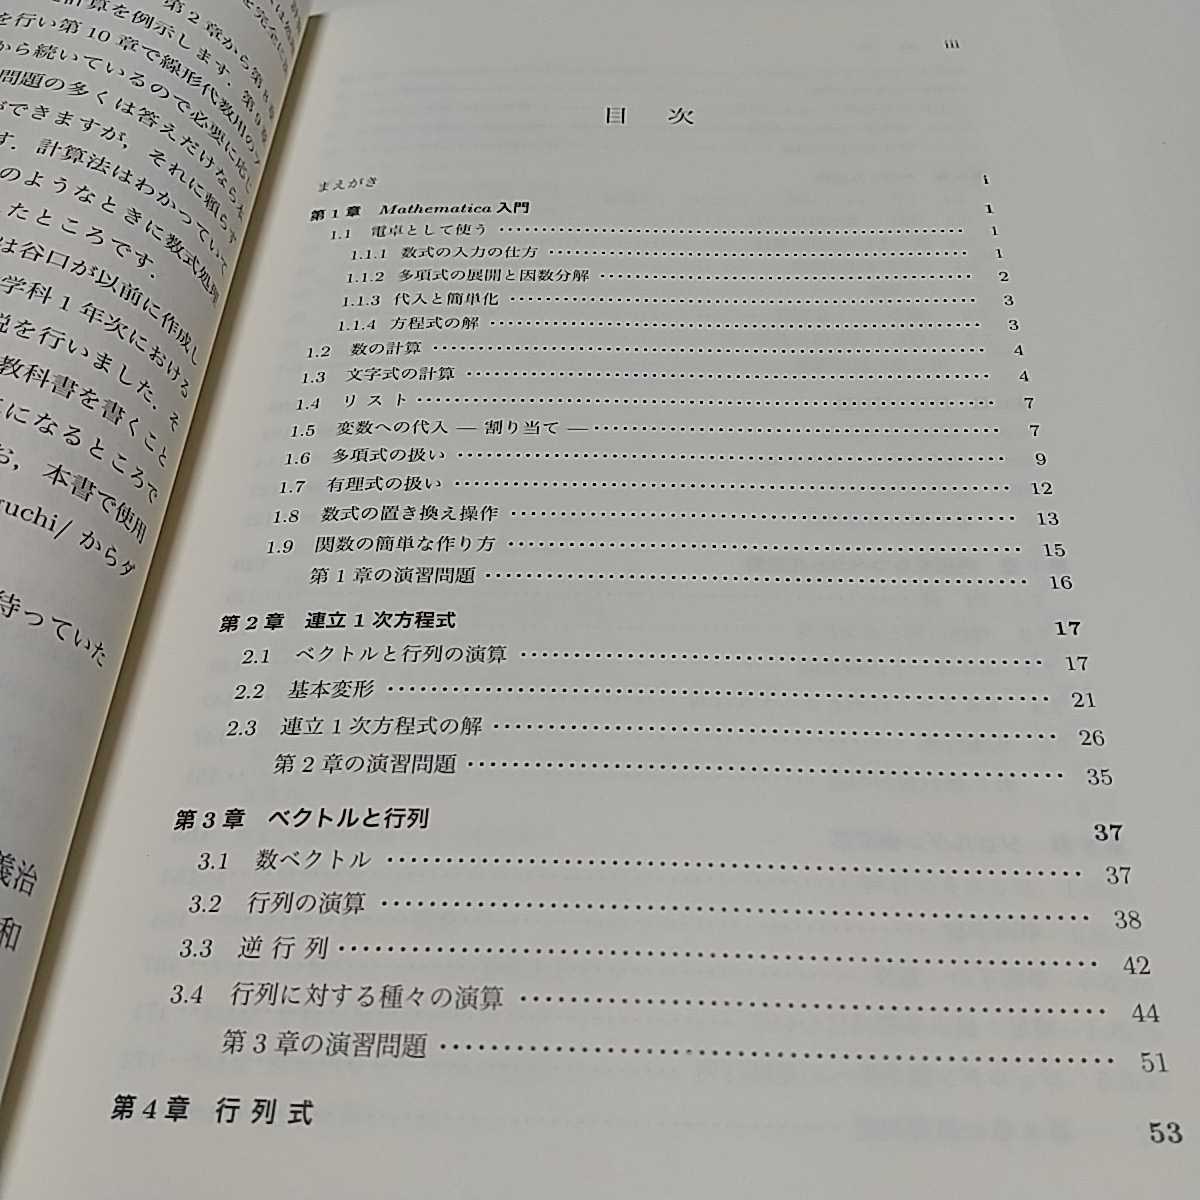  линия форма плата число .Mathematica число . информация наука серии 26...... Kiyoshi мир .. книжный магазин 02201F011